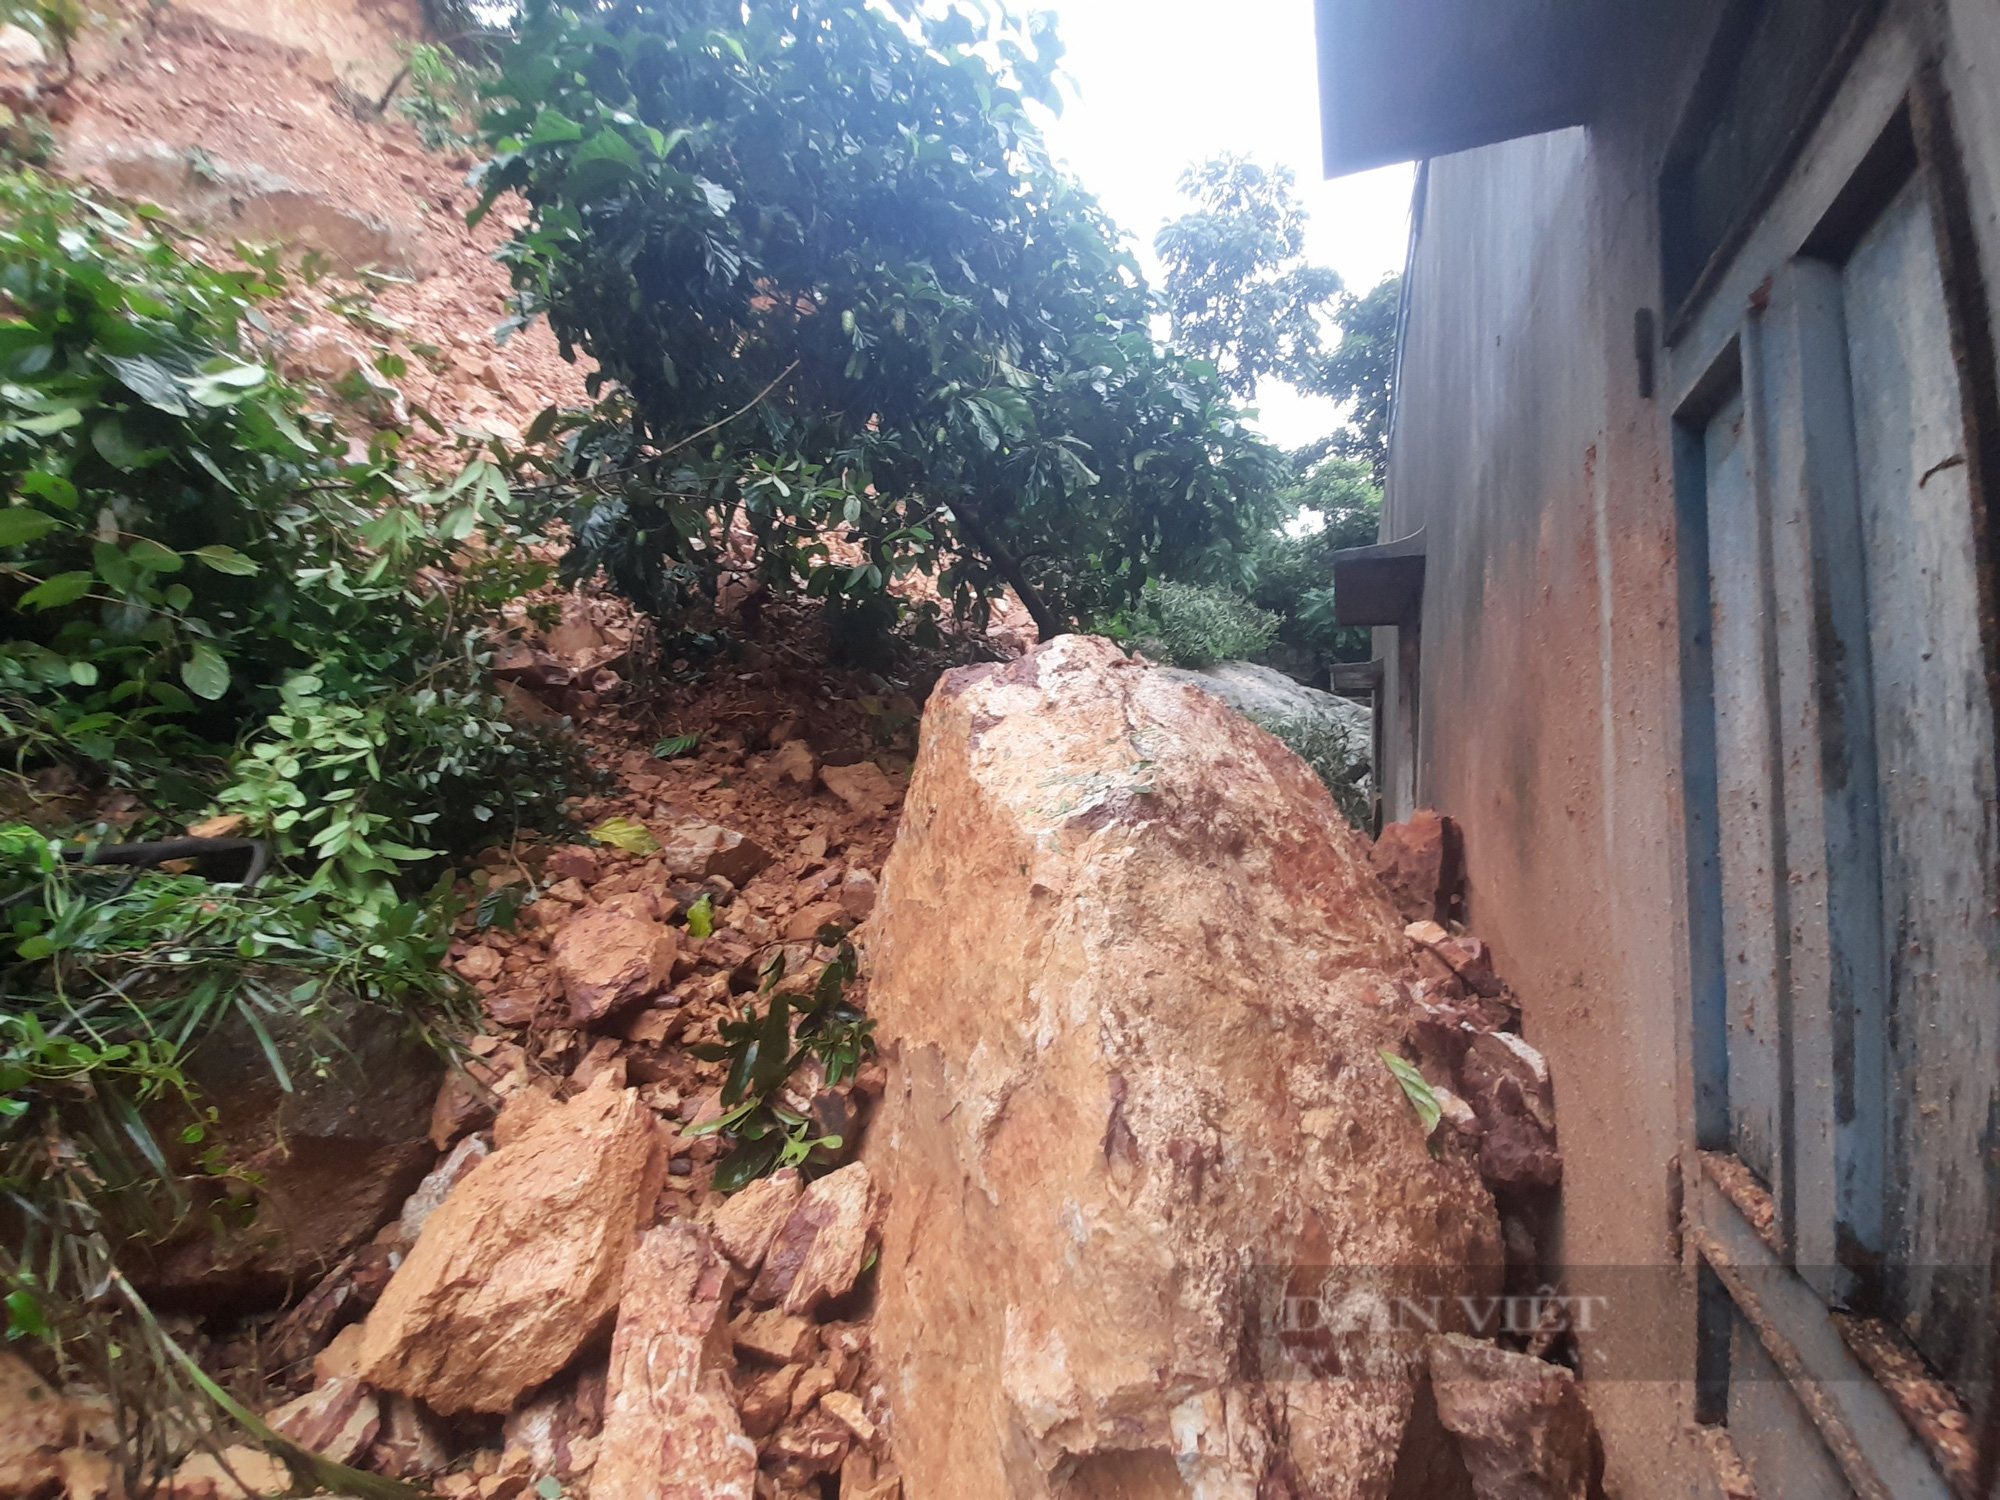 Đá lớn ào ào 'tấn công' nhà dân ở Quy Nhơn, tường nhà bị 'đánh' vỡ vụn  - Ảnh 1.